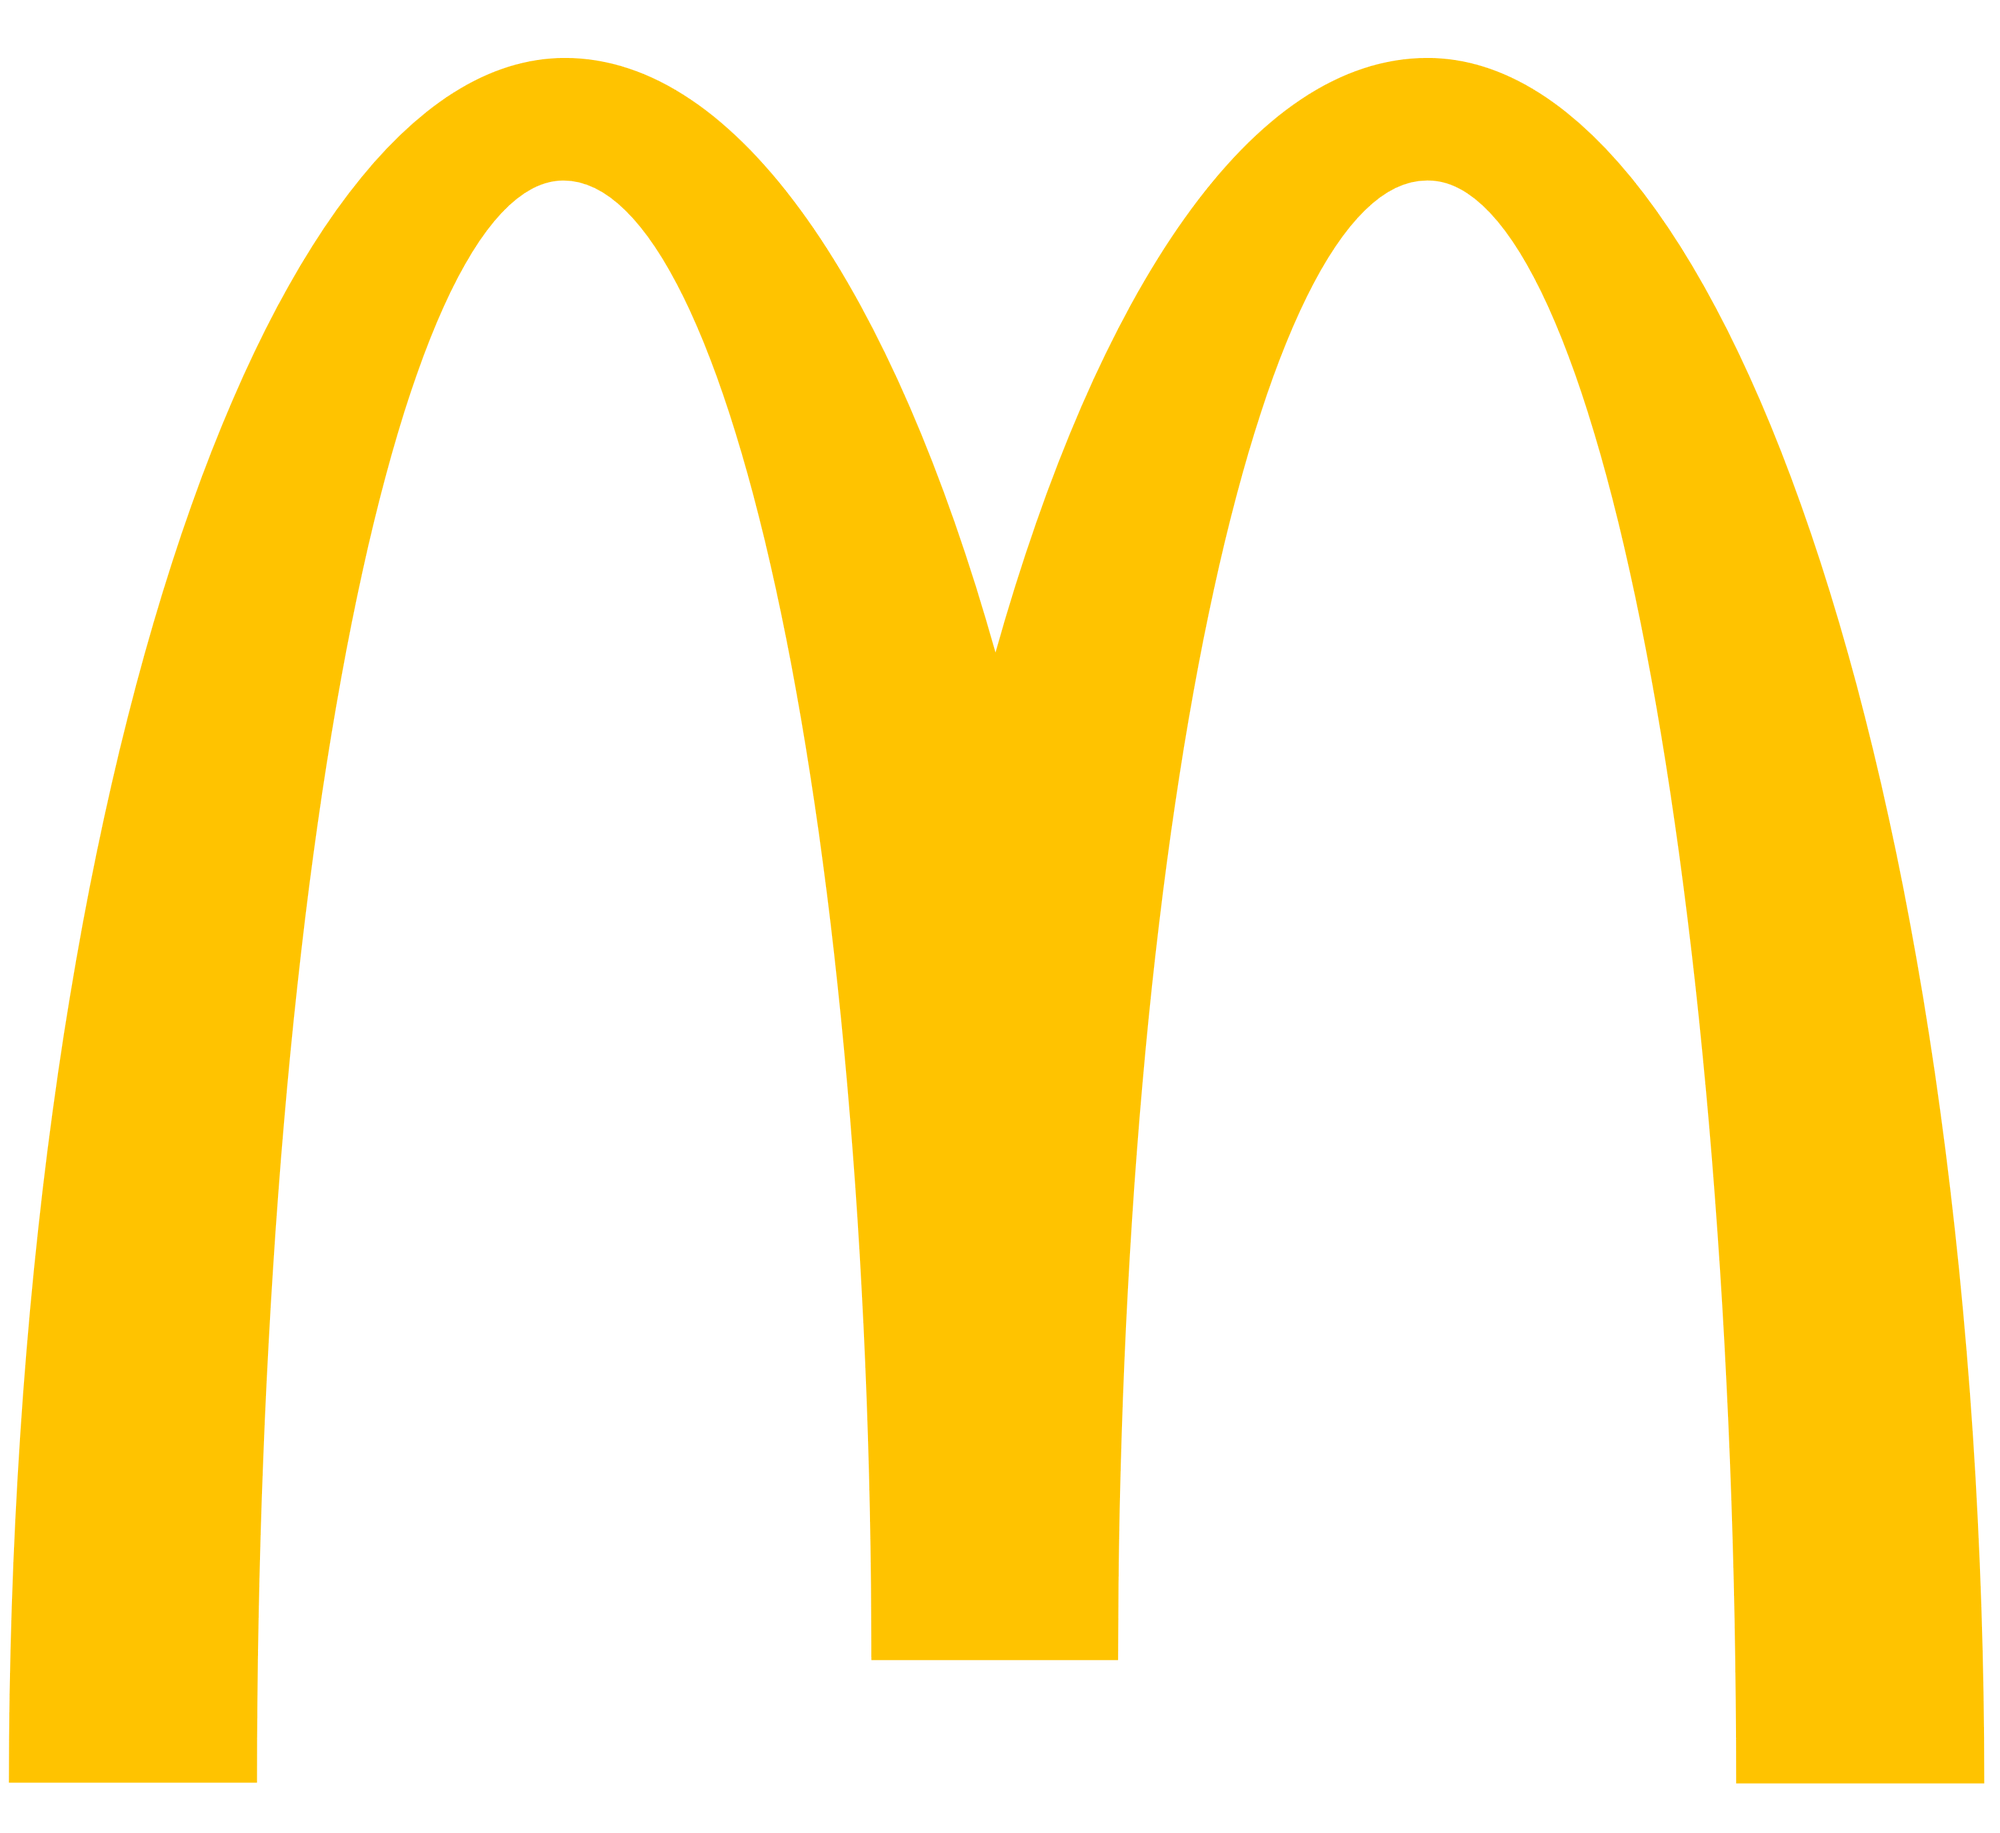 Image - Mcdonalds logo 2018.png | Warner Bros. Entertainment Wiki ...